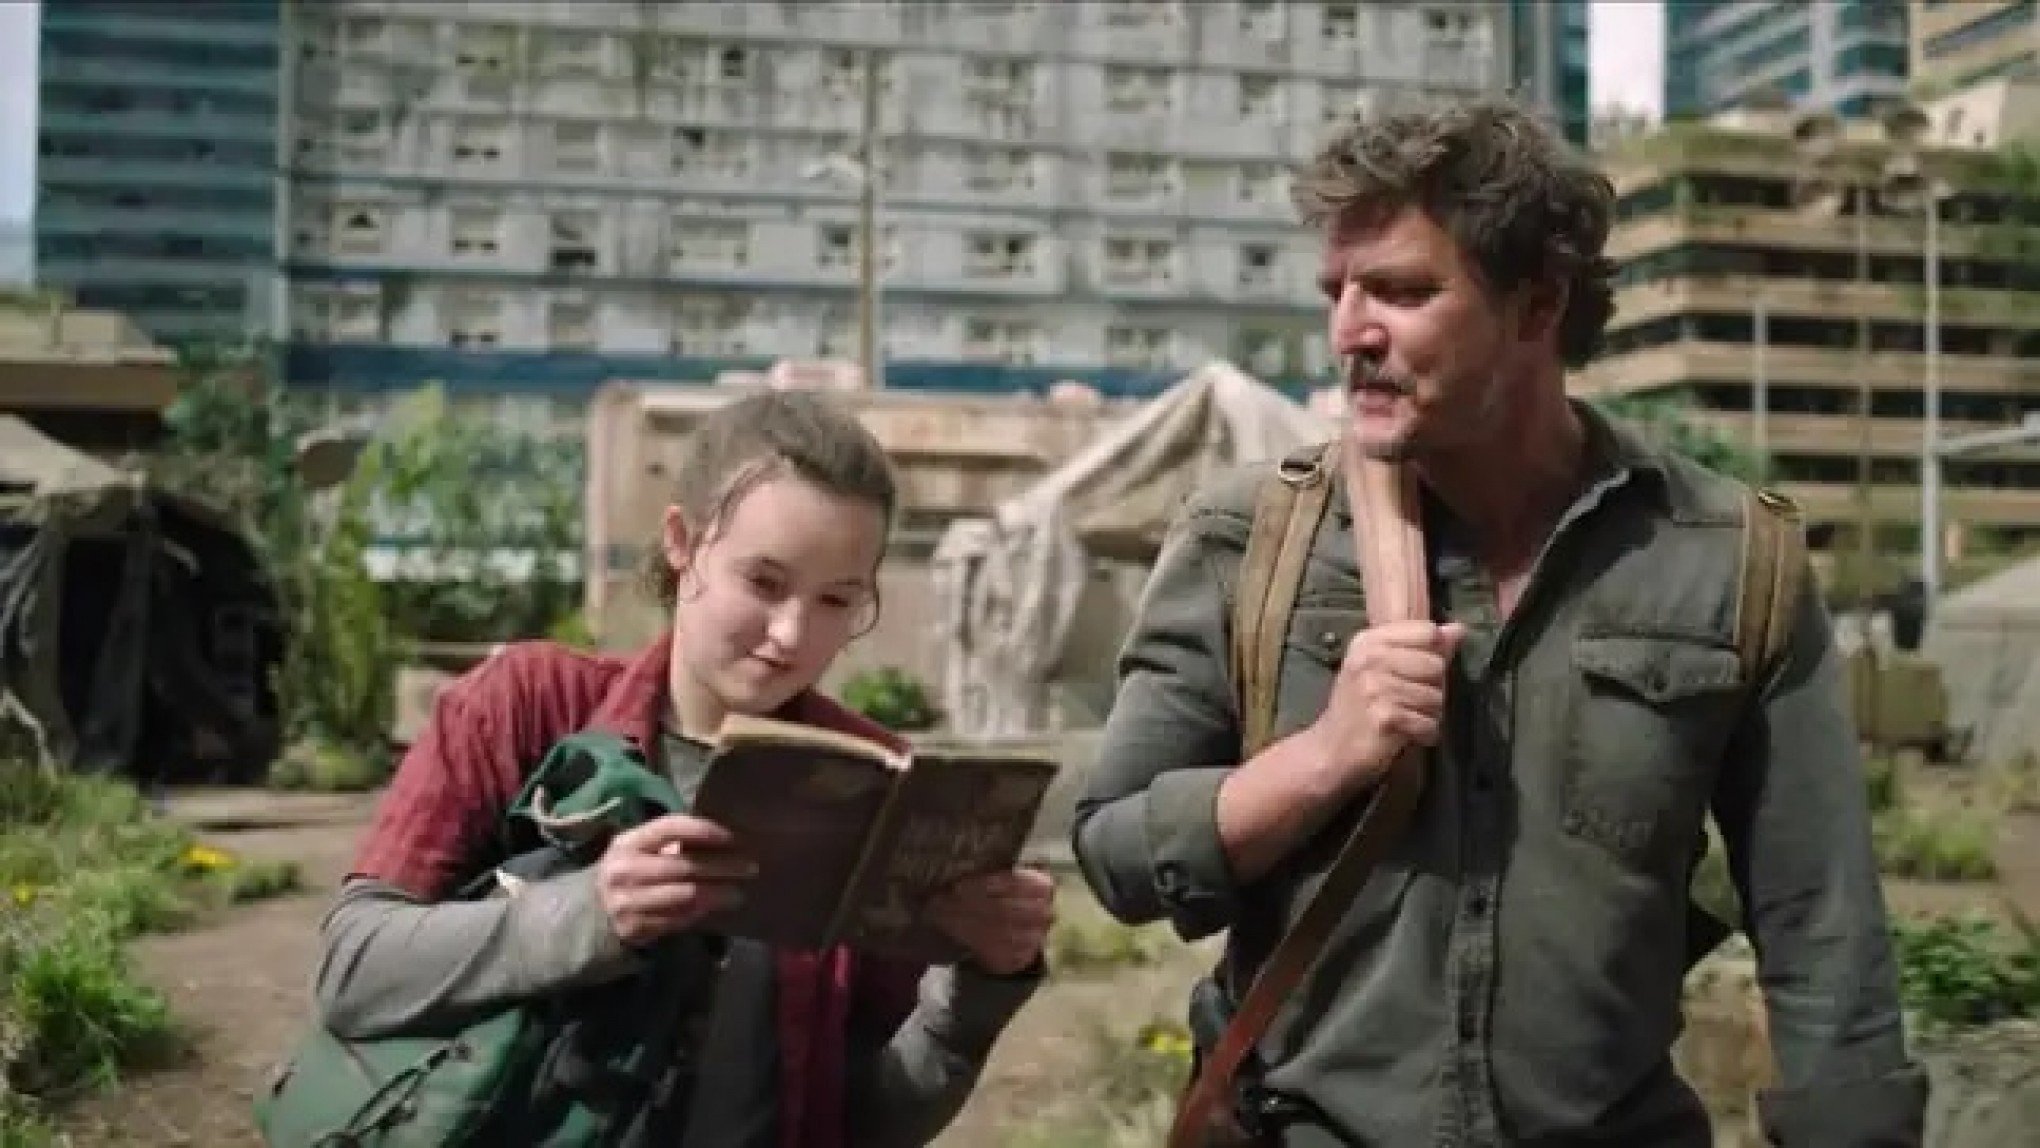 Série The Last of Us tem segunda temporada confirmada no HBO Max -  Entretenimento - Jornal NH